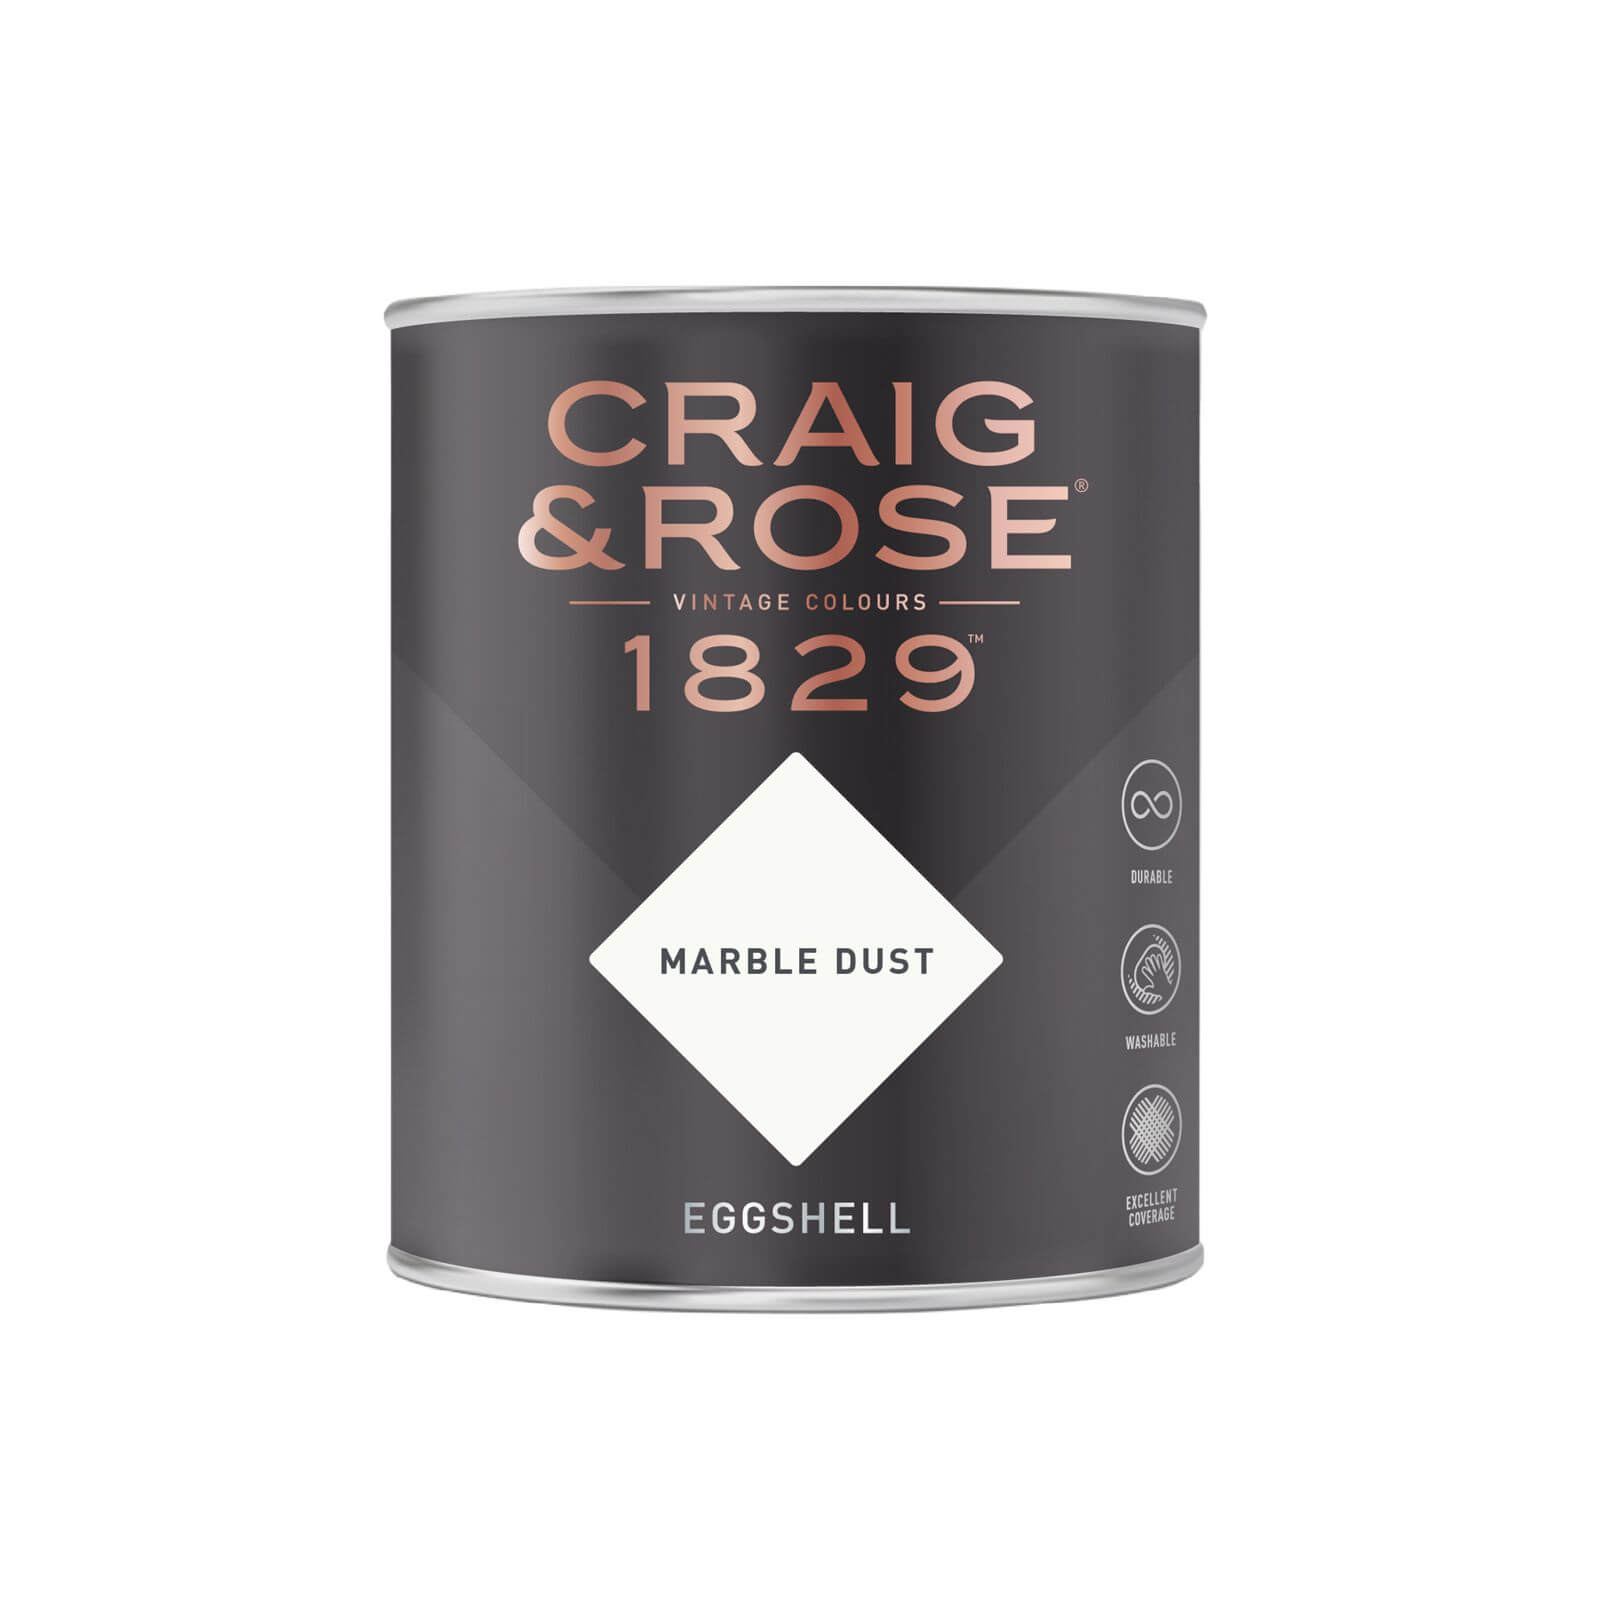 Craig & Rose 1829 Eggshell Paint Marble Dust - 750ml